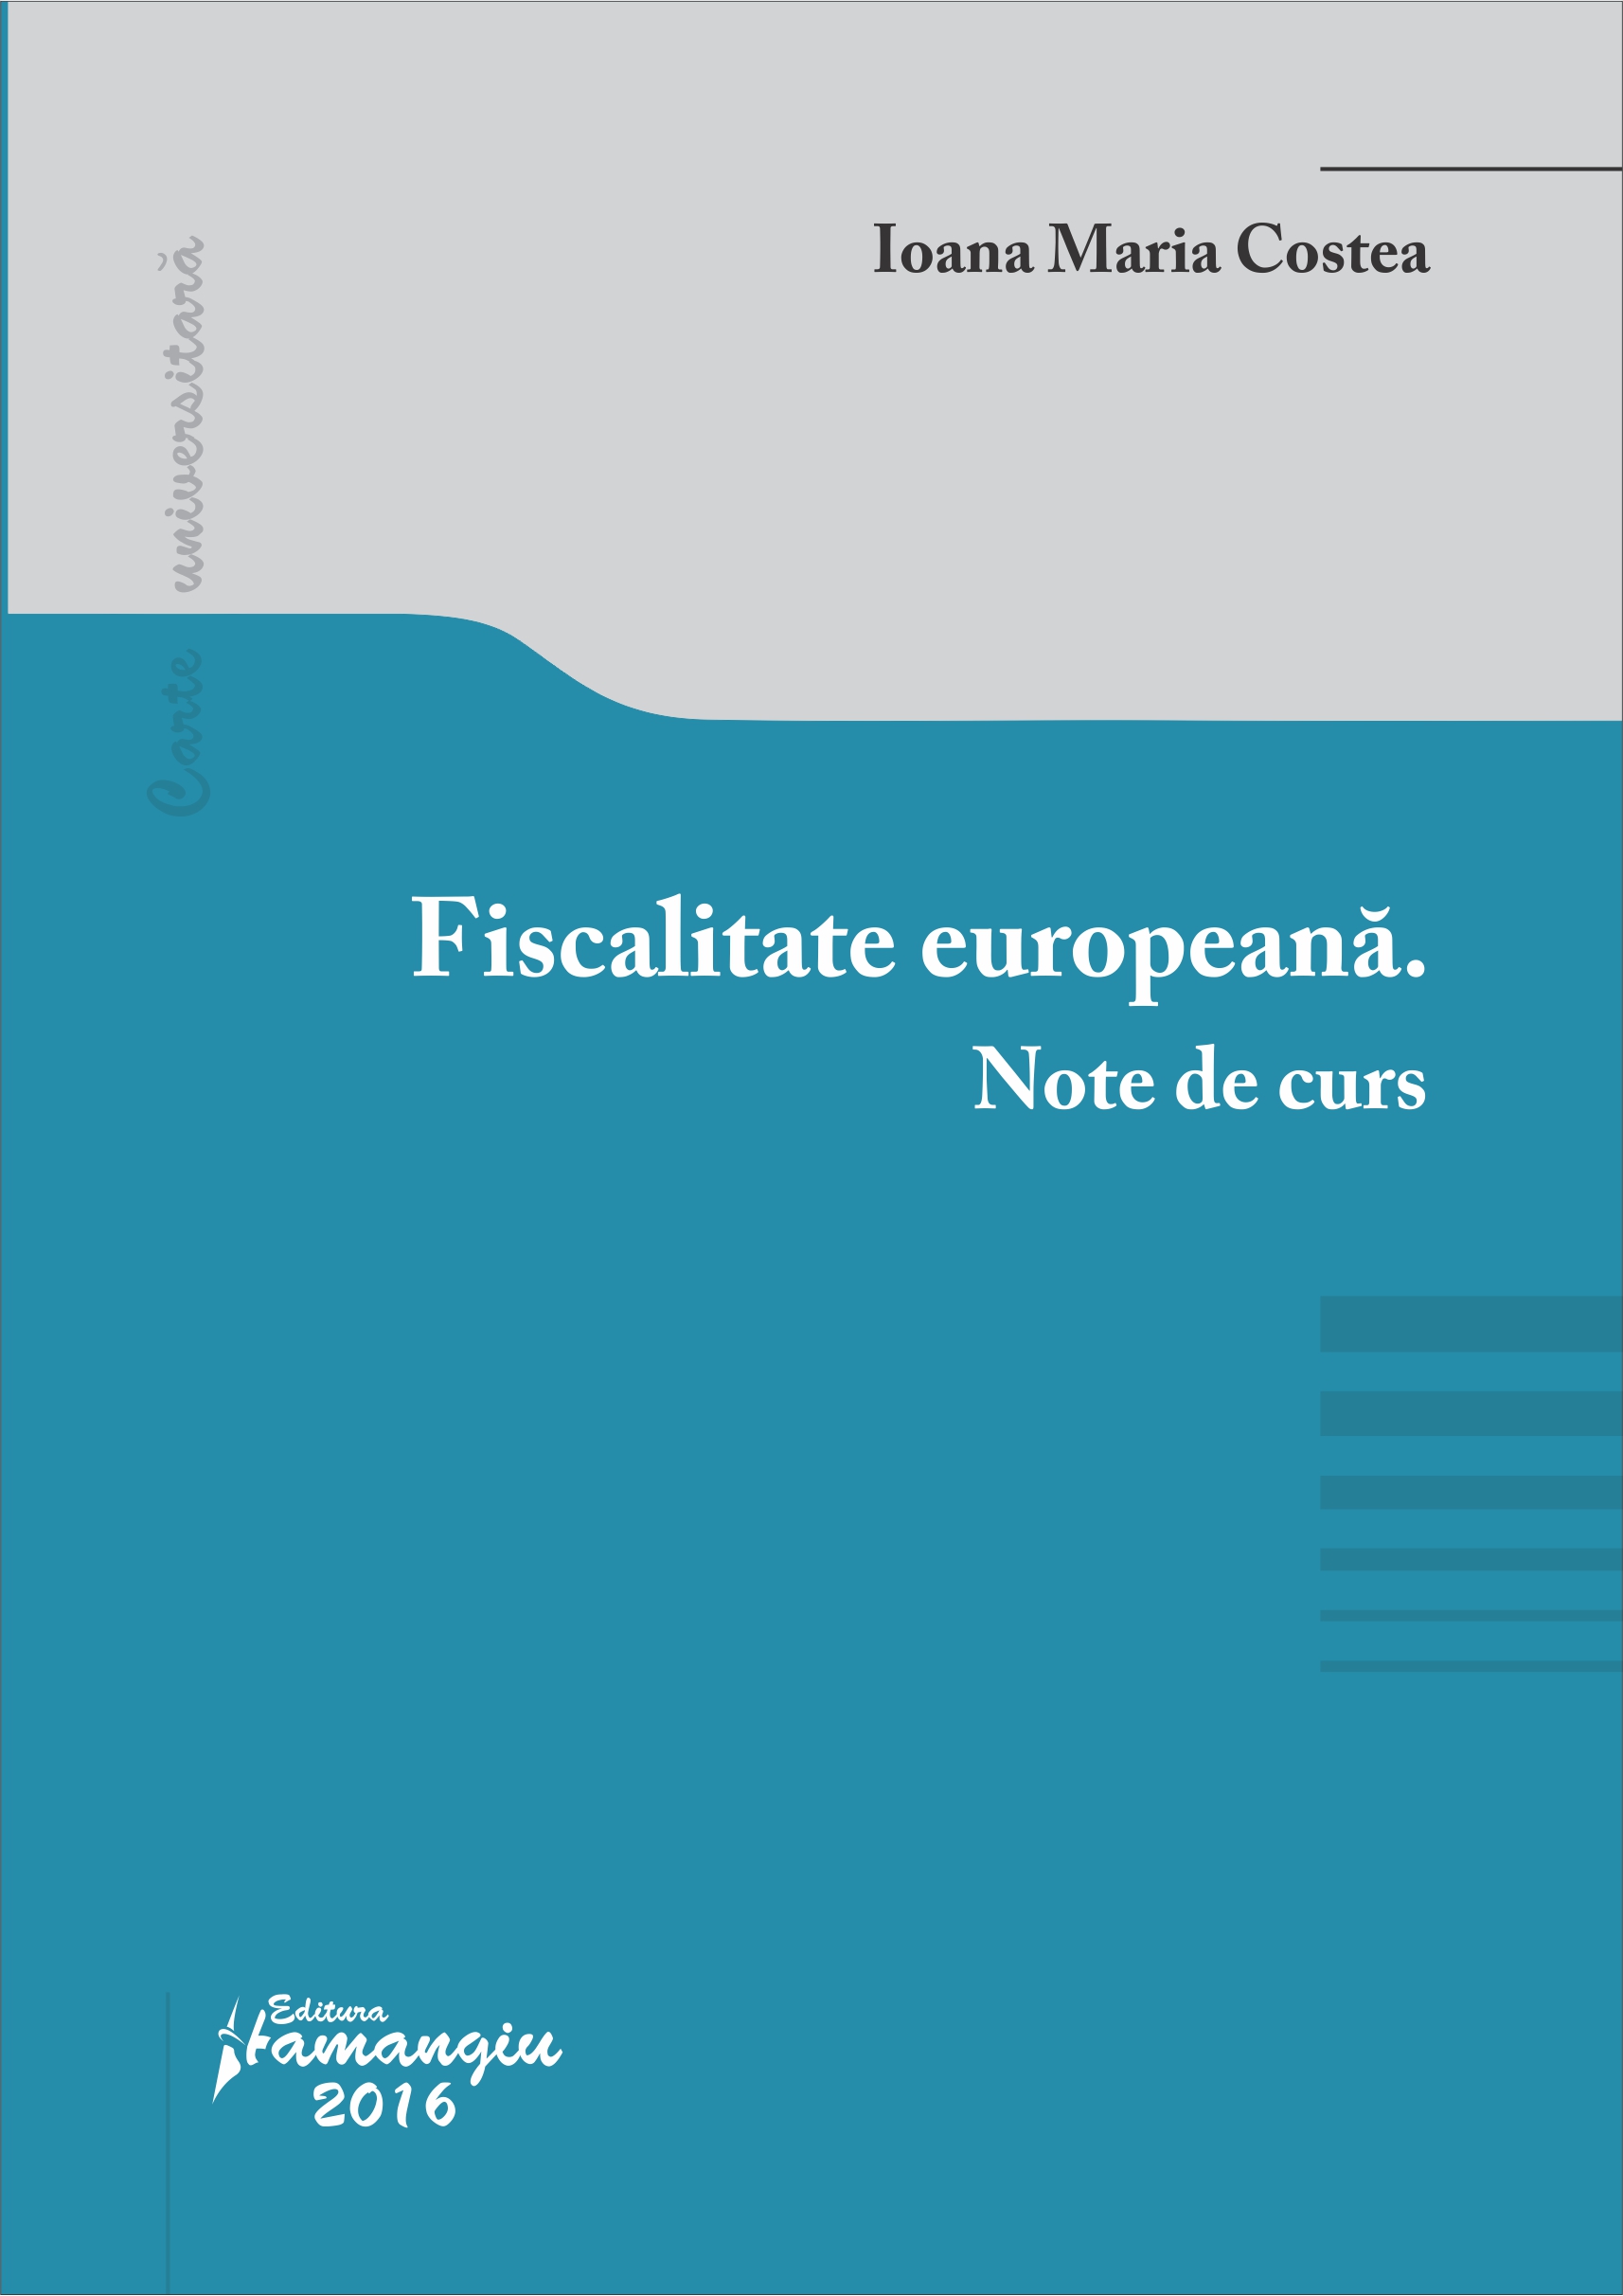 Fiscalitate europeana. Note de curs - Ioana Maria Costea